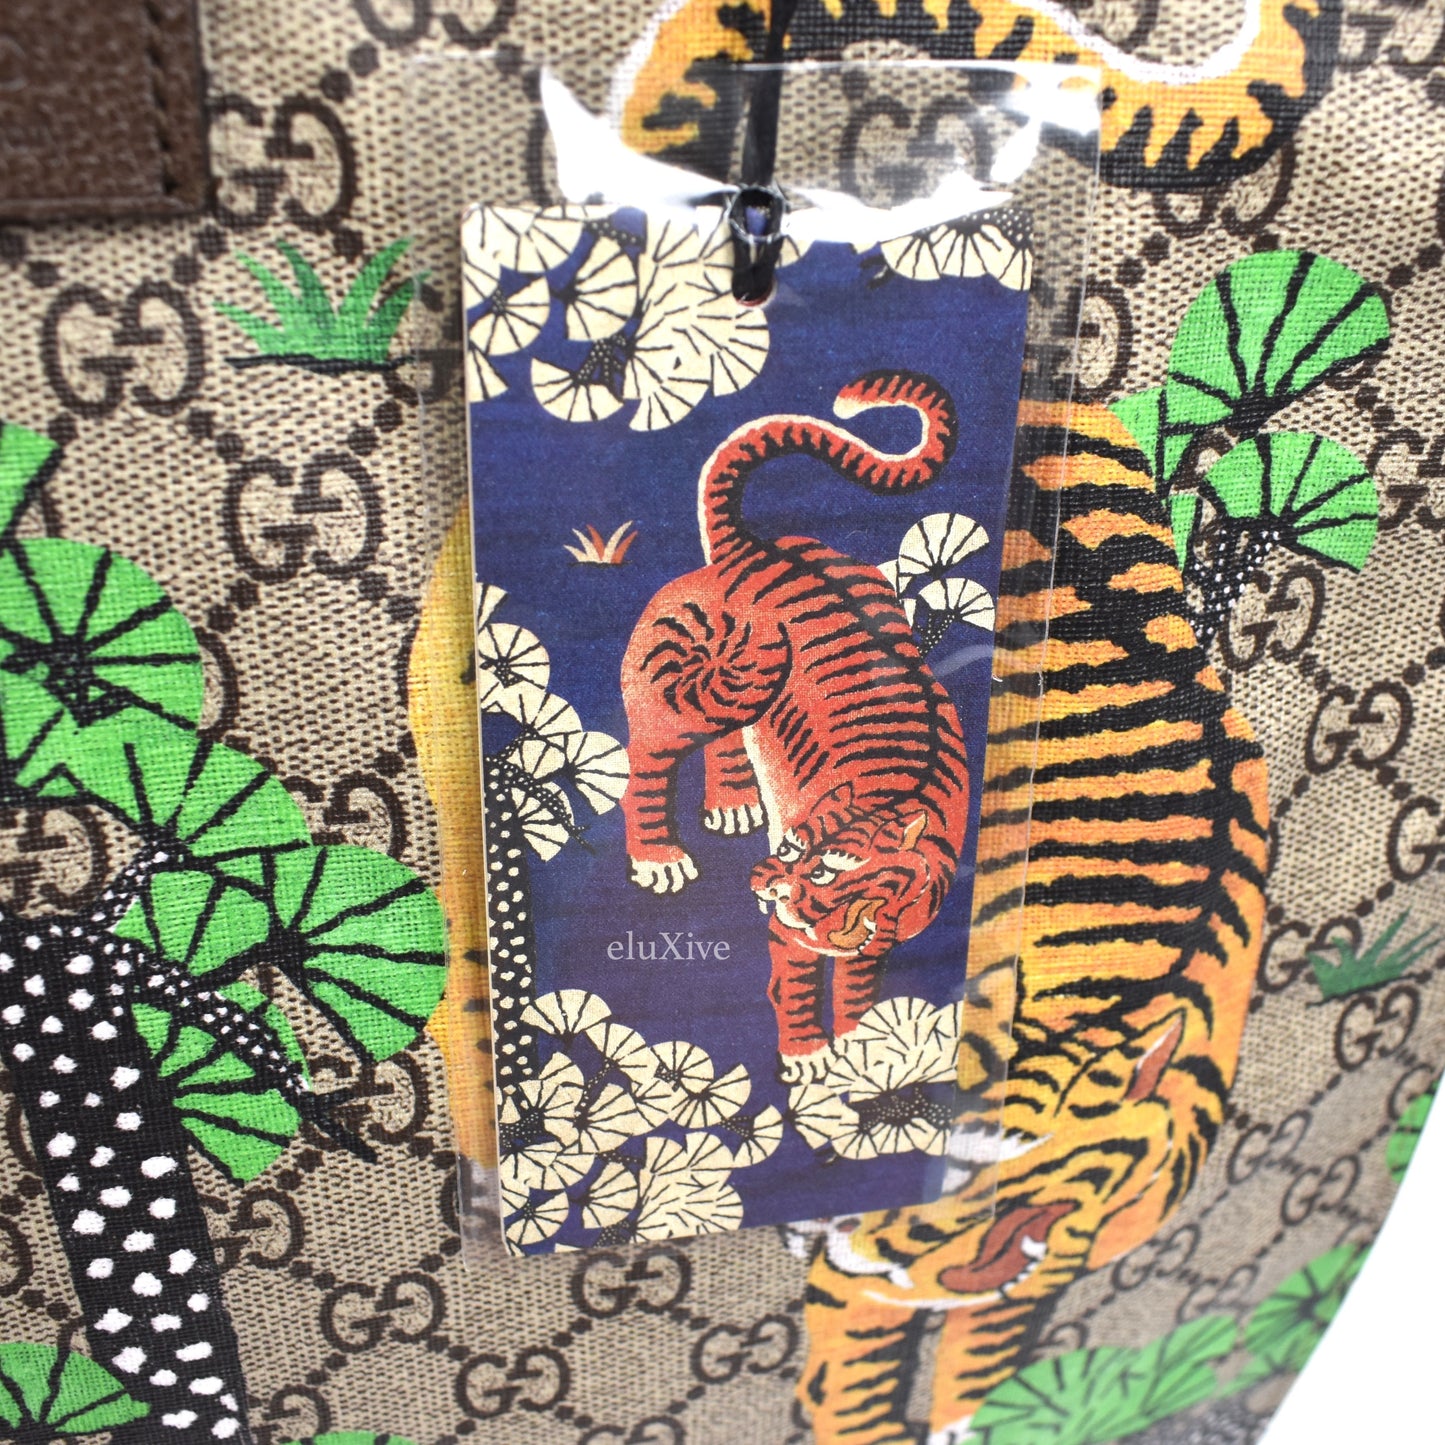 Gucci - GG Supreme Tiger Print Tote Bag